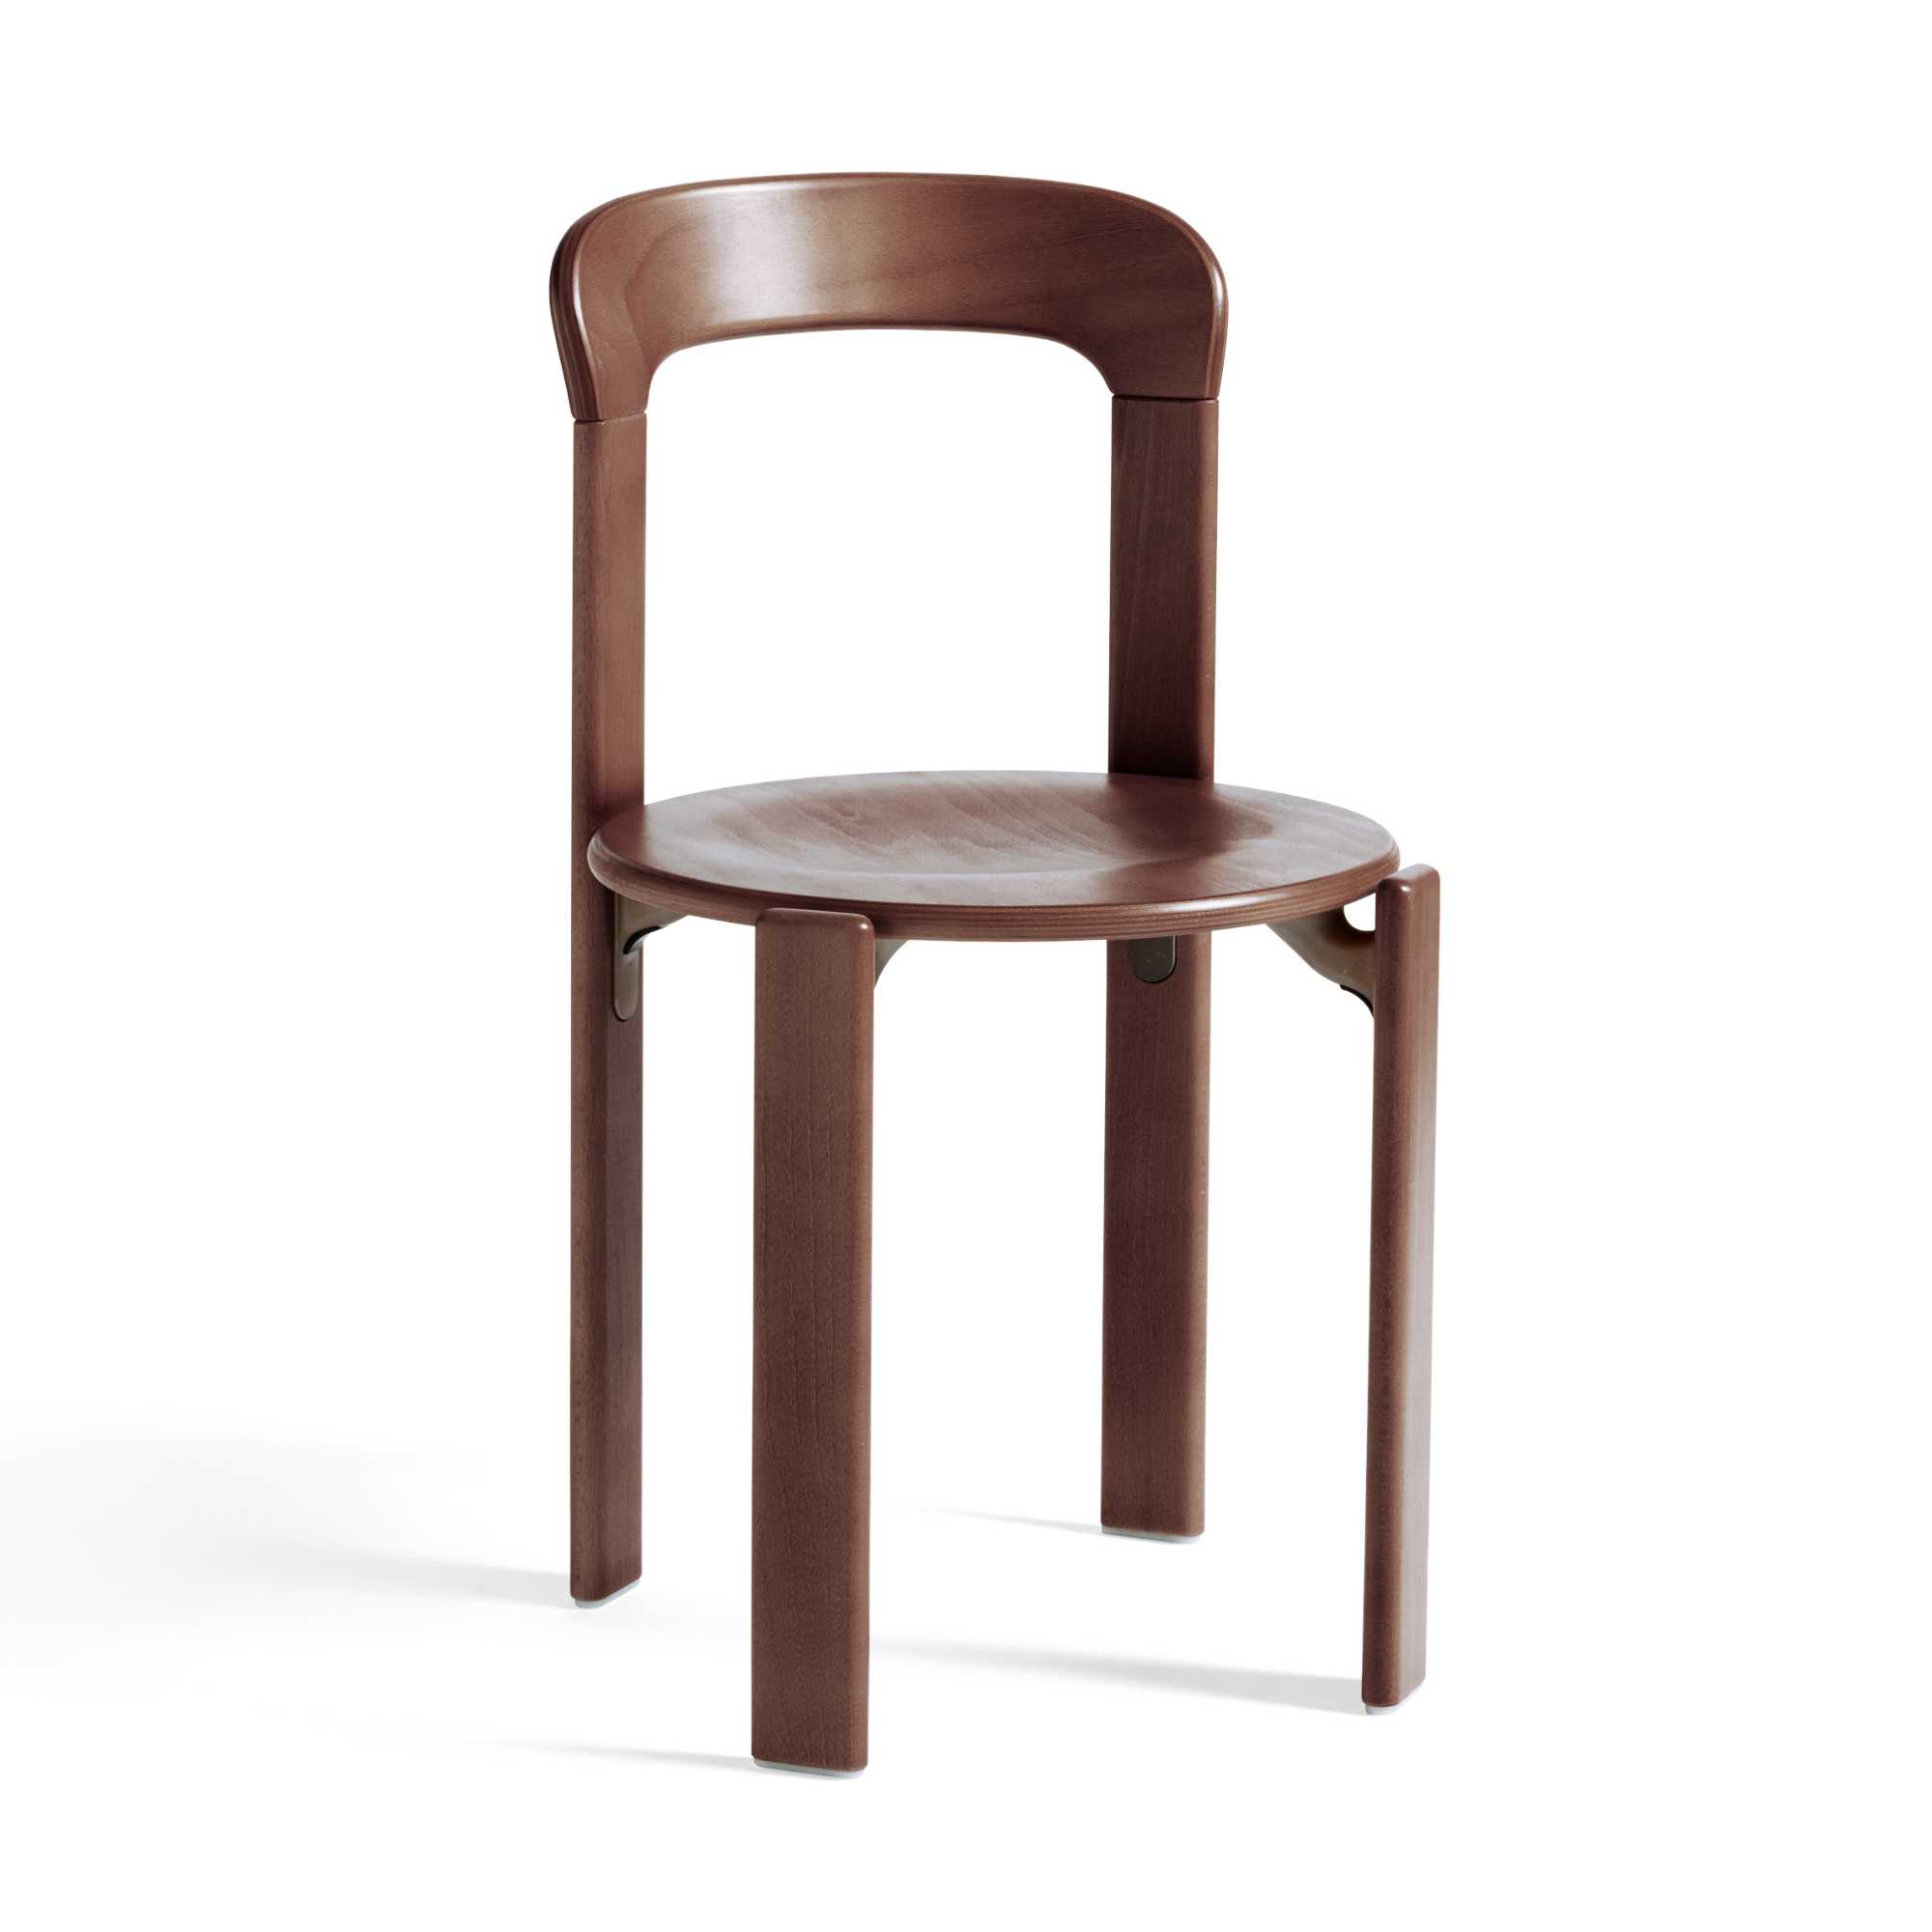 Hay Rey chair, umber brown